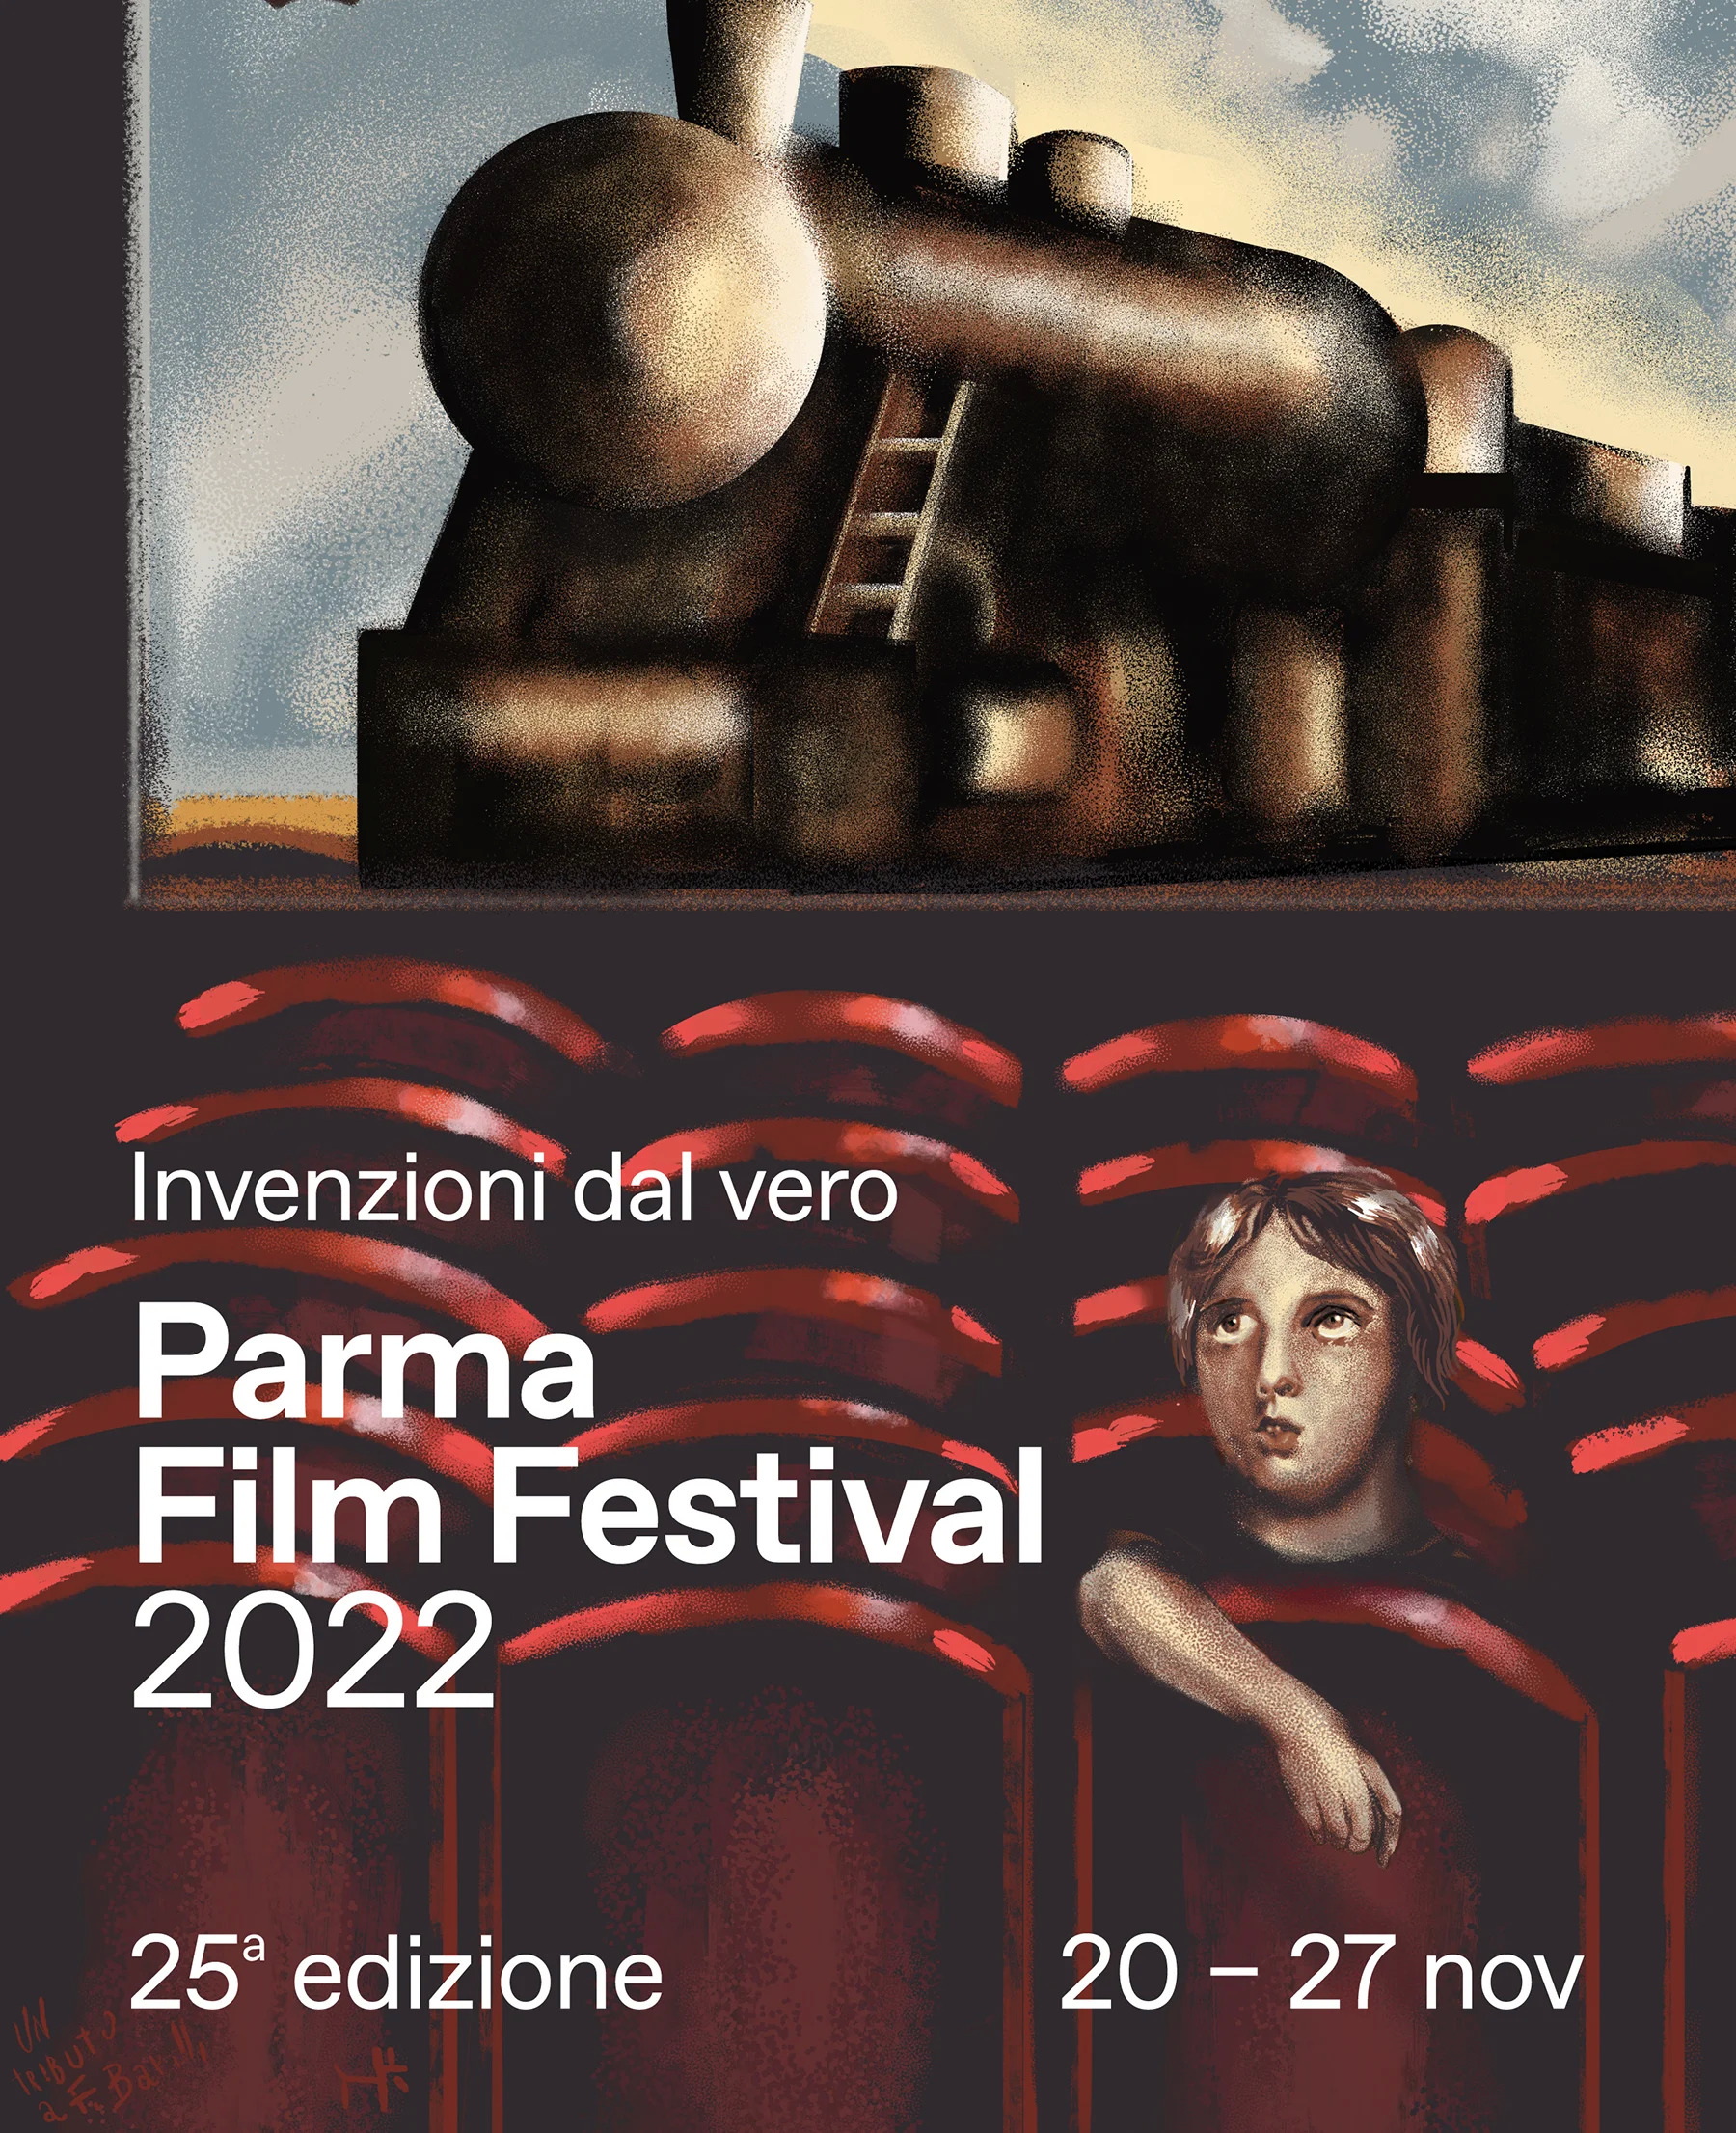 PARMA FILM FESTIVAL INVENZIONI DAL VERO  “Parma Film Festival – Invenzioni dal vero” si propone, ormai da diversi anni, di rispondere attraverso proie